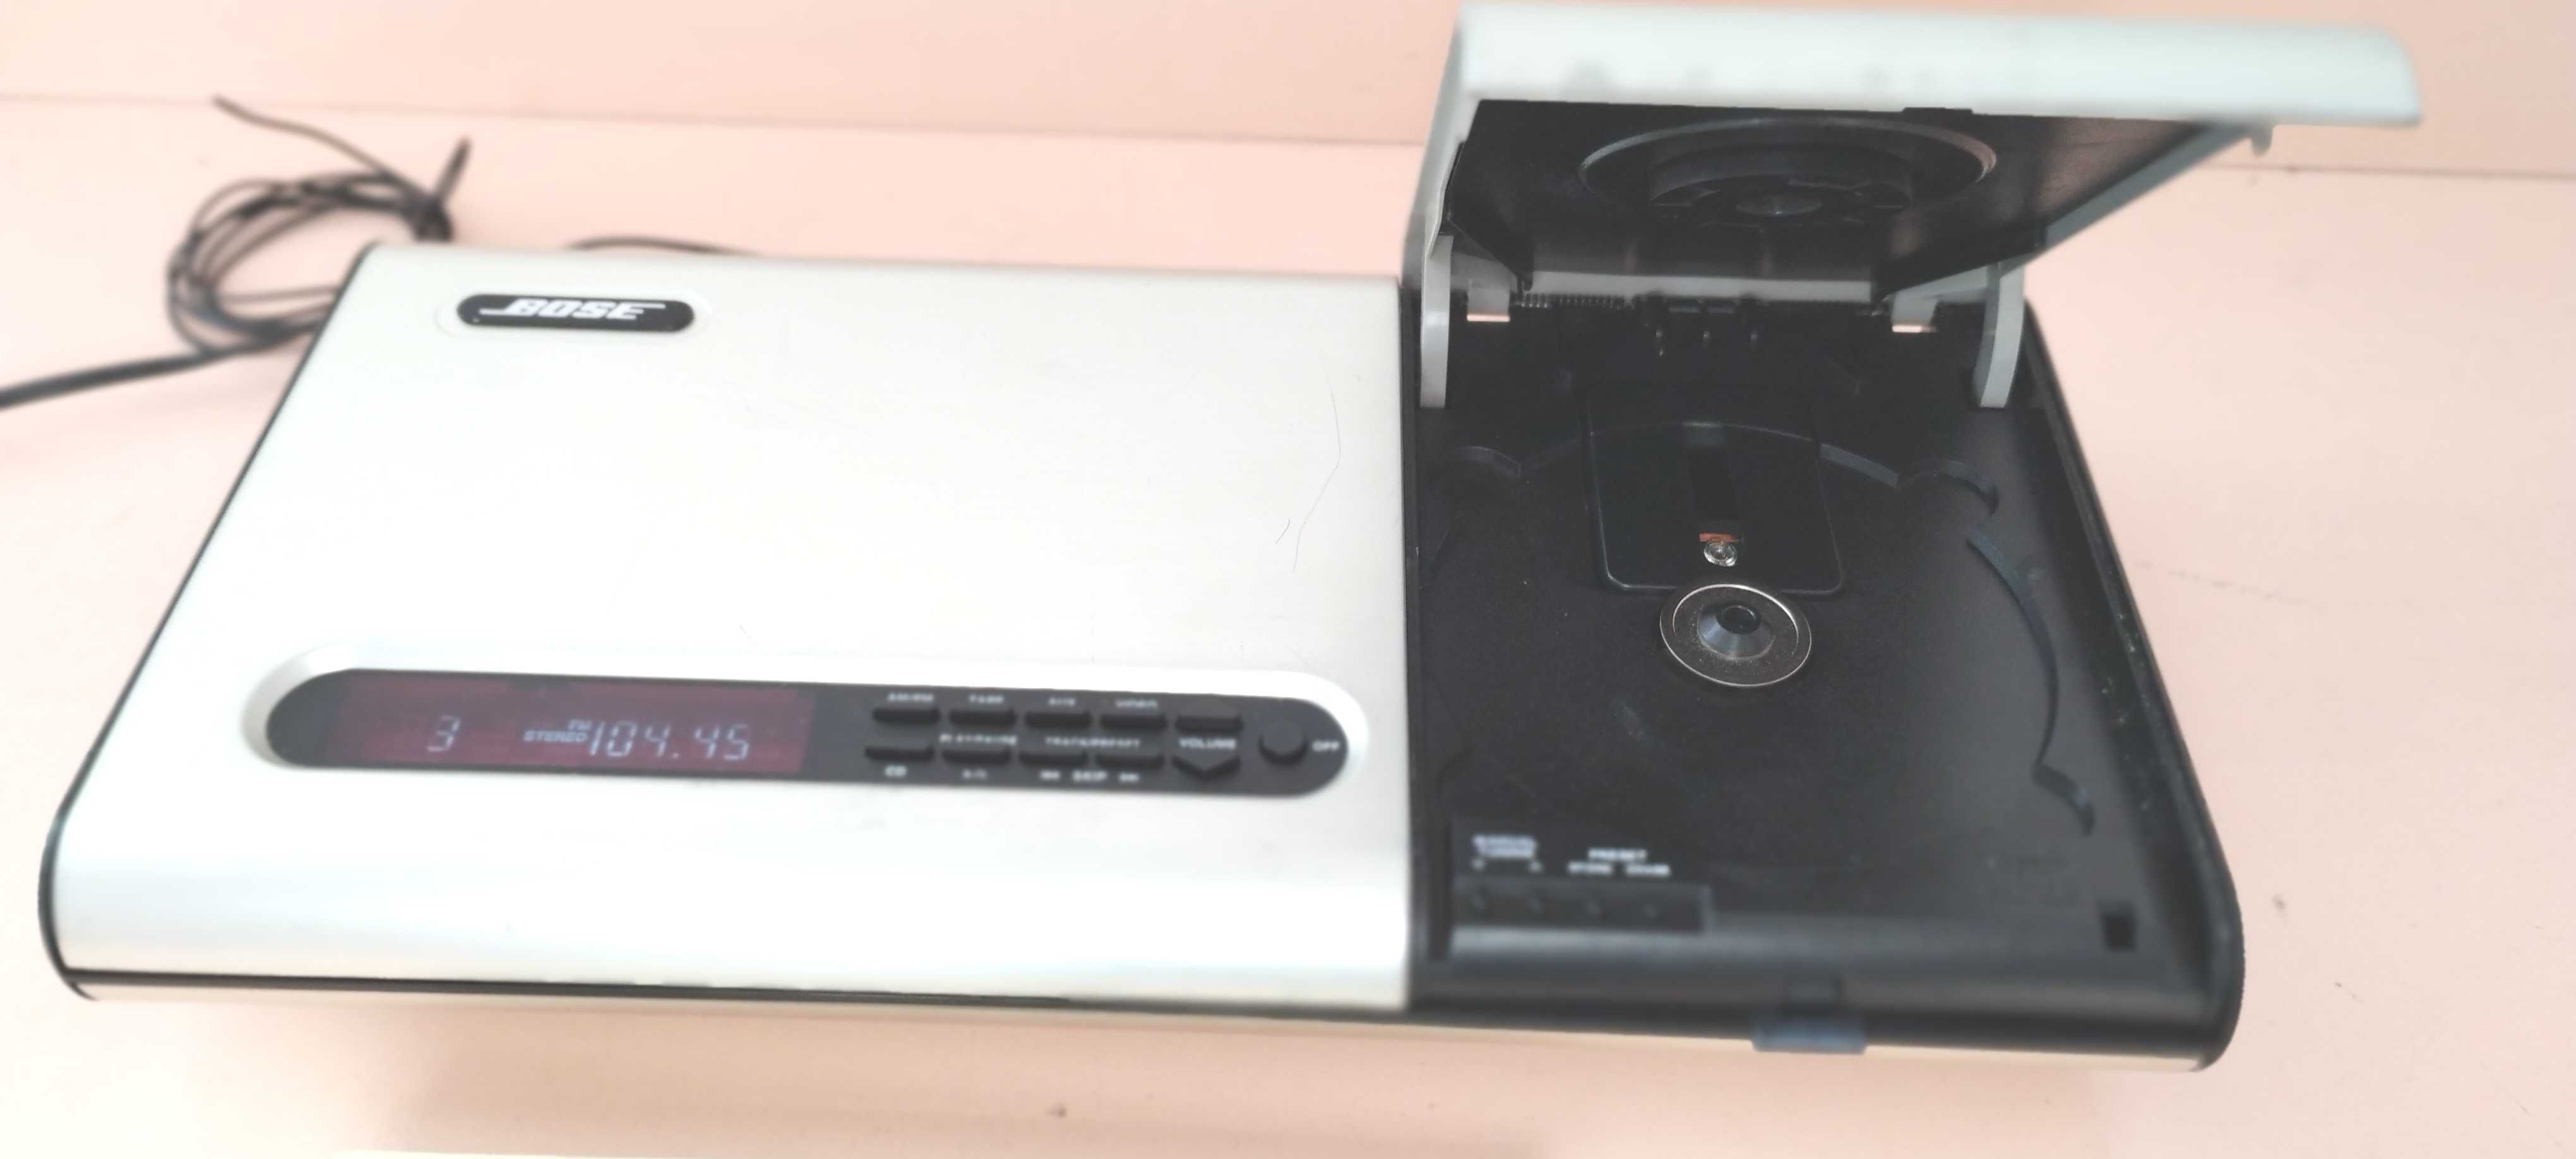 sistem muzica subwoofer Bose 2683-2  cu preamplificator Bose Lifestyle